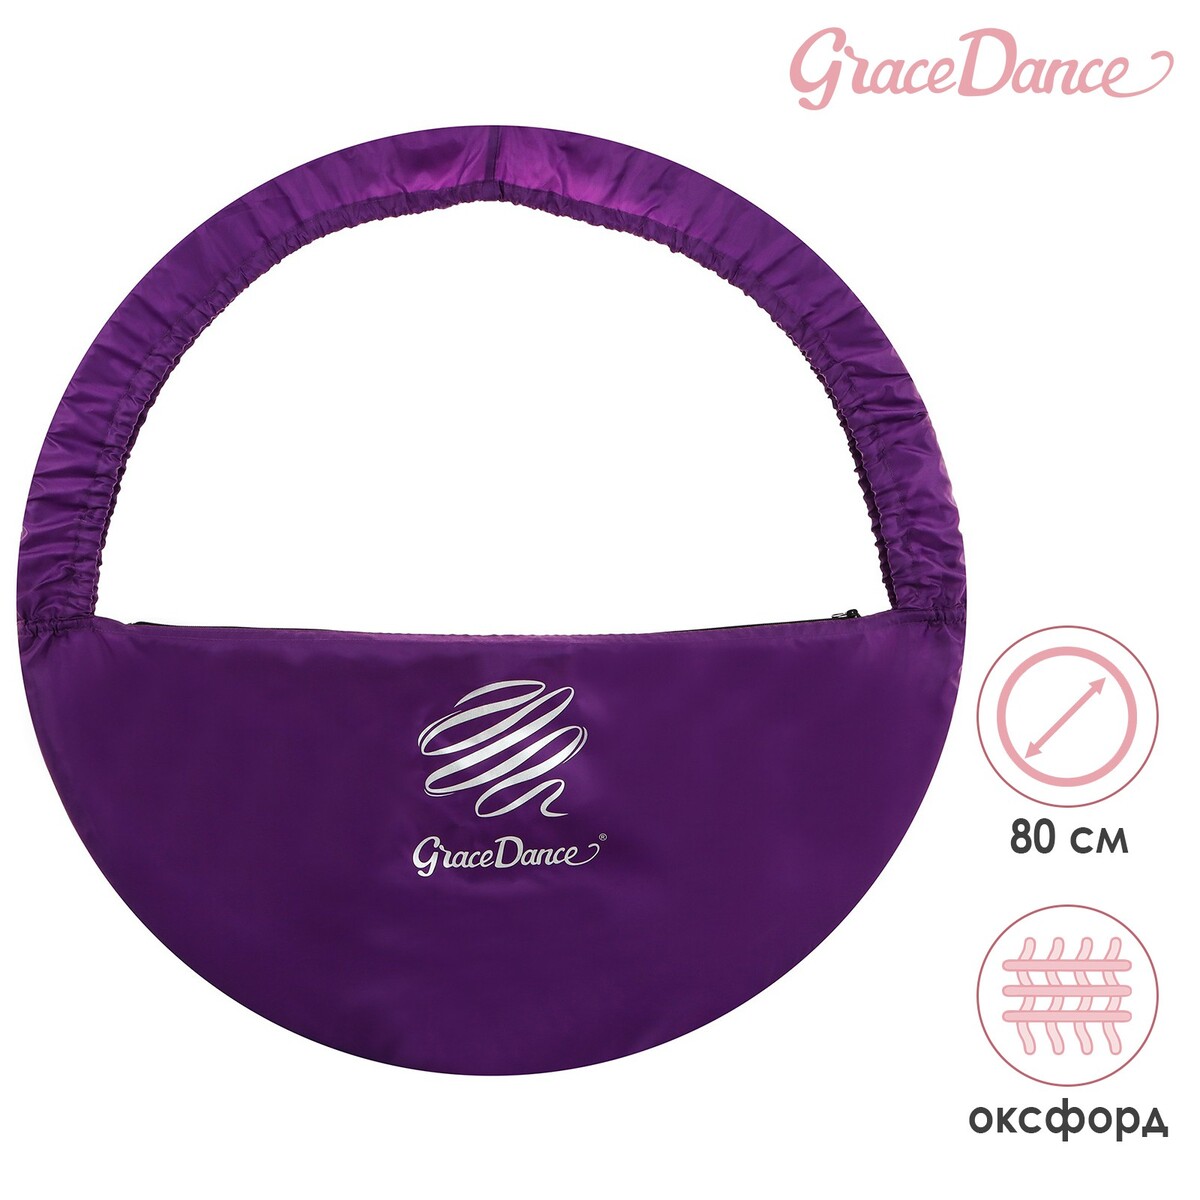 Чехол для обруча grace dance, d=80 см, цвет фиолетовый обмотка для гимнастического обруча indigo rainbow in151 wv 20мм 14м зерк на подкл бел фиол